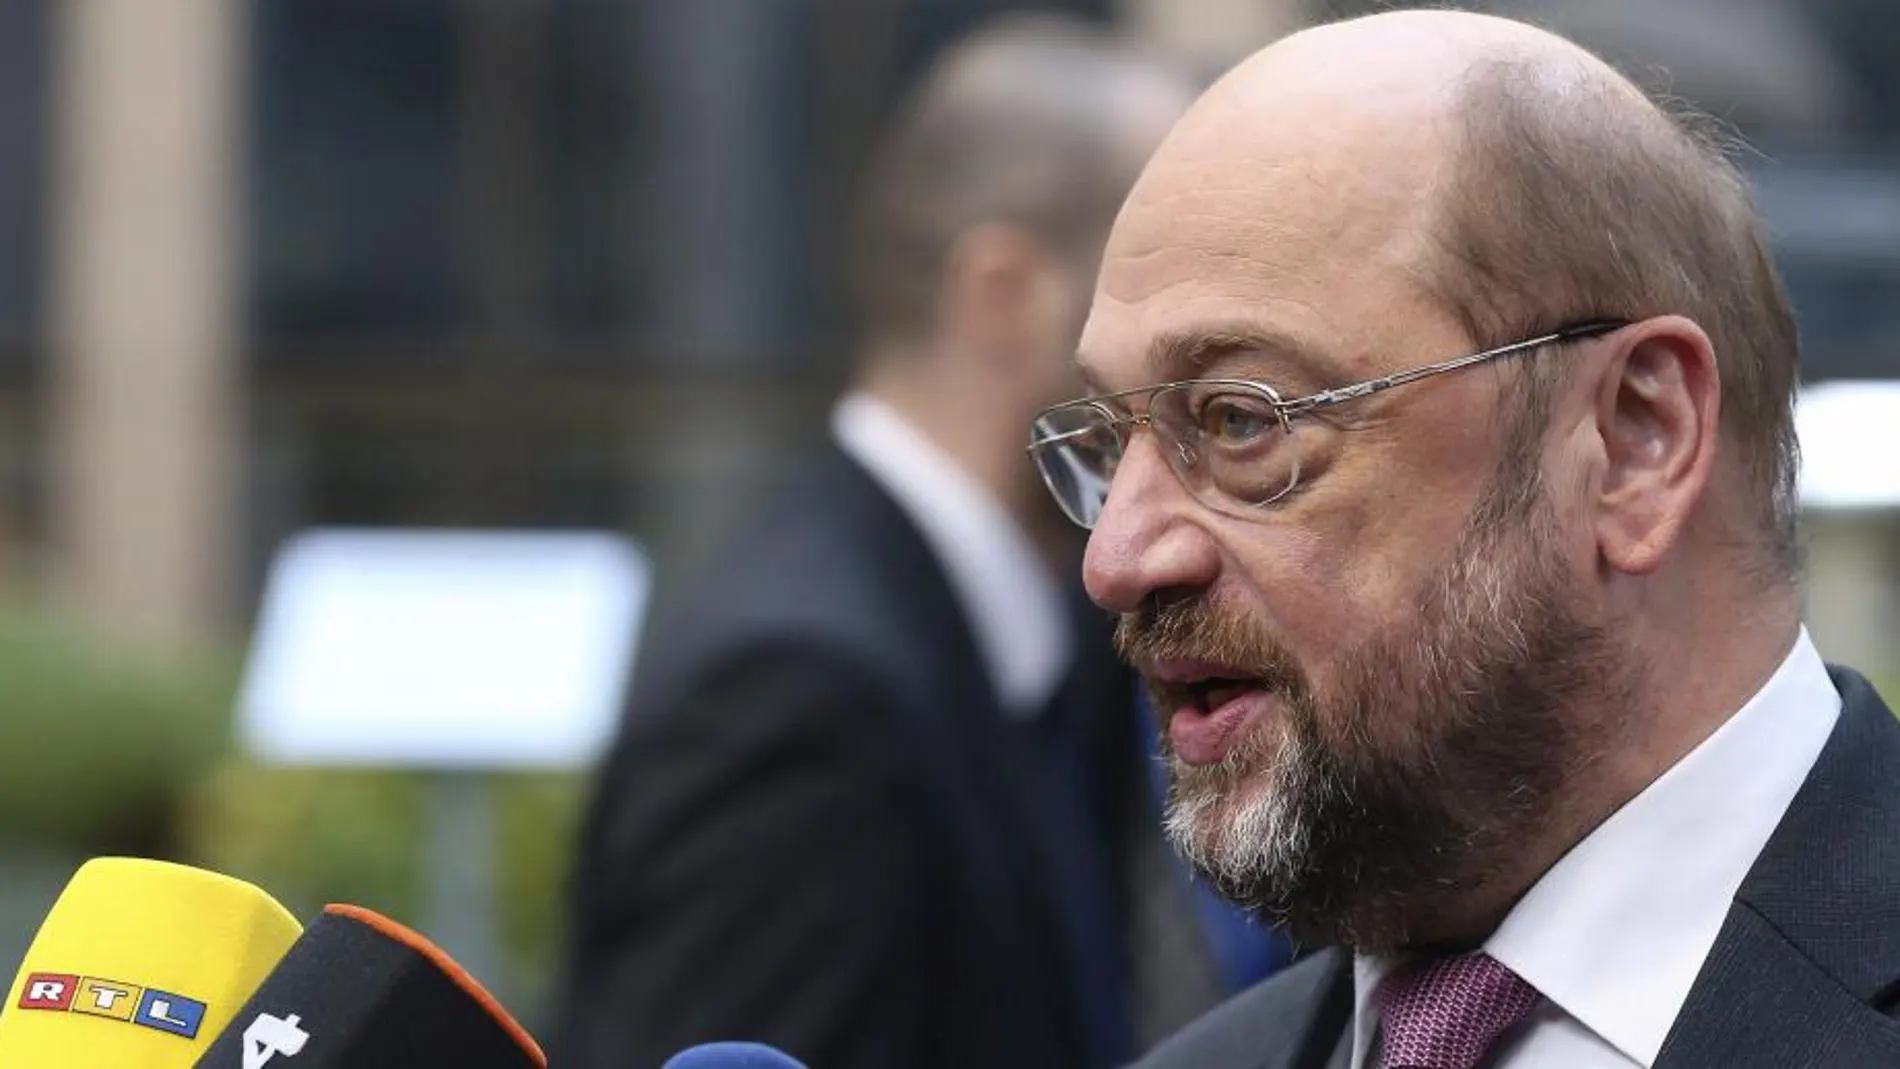 El presidente del Parlamento Europeo (PE), Martin Schulz, se dirige a los medios de comunicación a su llegada a la cumbre de líderes de la Unión Europea (UE) que se celebra en Bruselas (Bélgica), hoy, jueves 19 de diciembre de 2013.